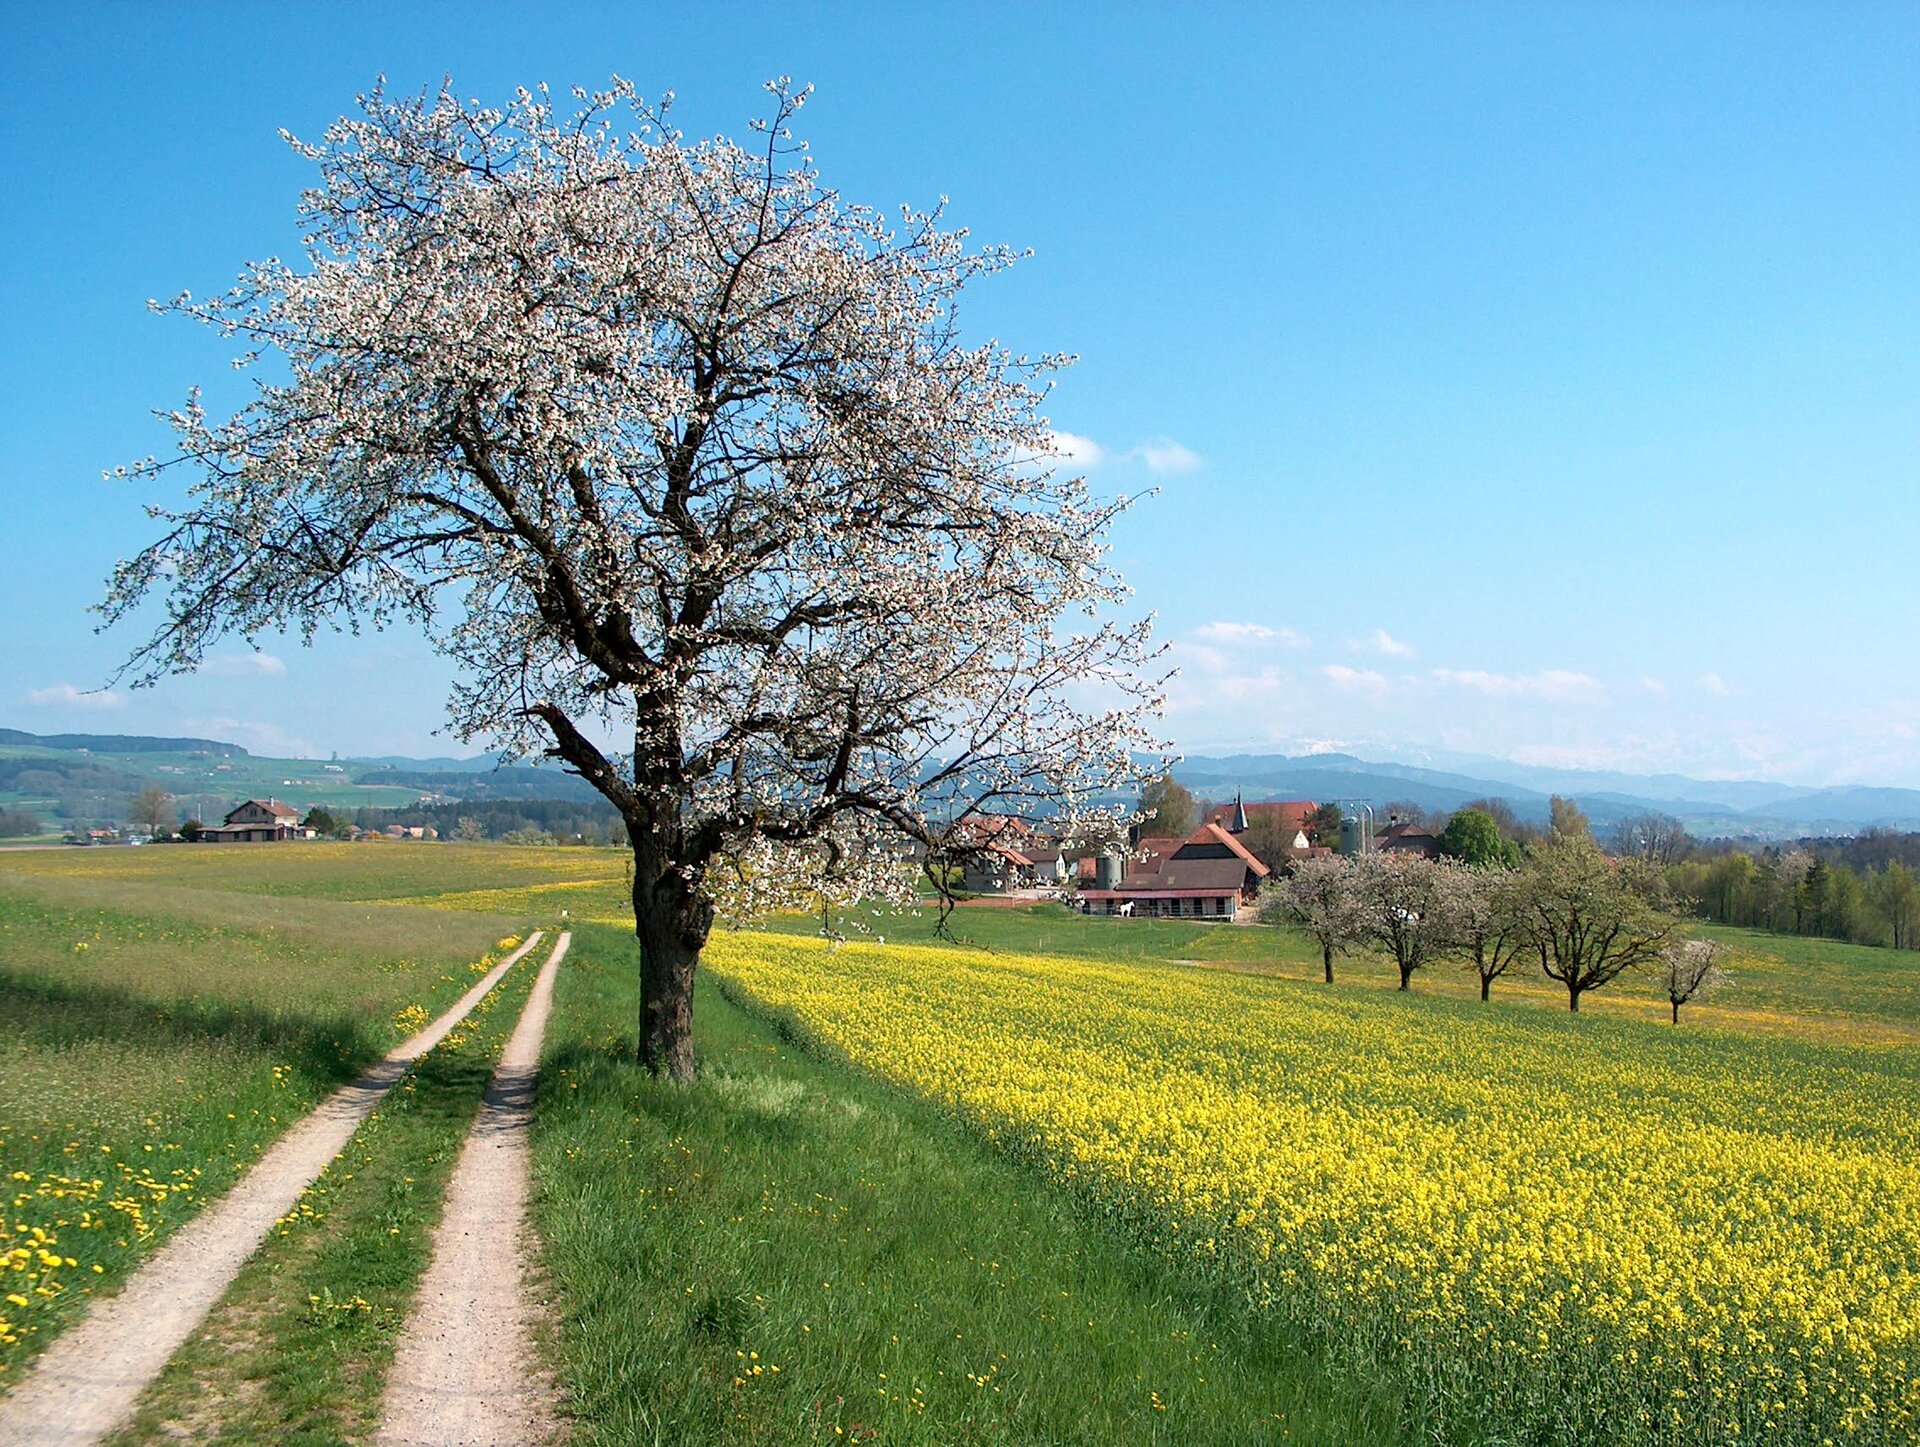 Krajobraz wiosenny Źródło: Benjamin Gimmel, Krajobraz wiosenny, 2004, licencja: CC BY-SA 3.0.